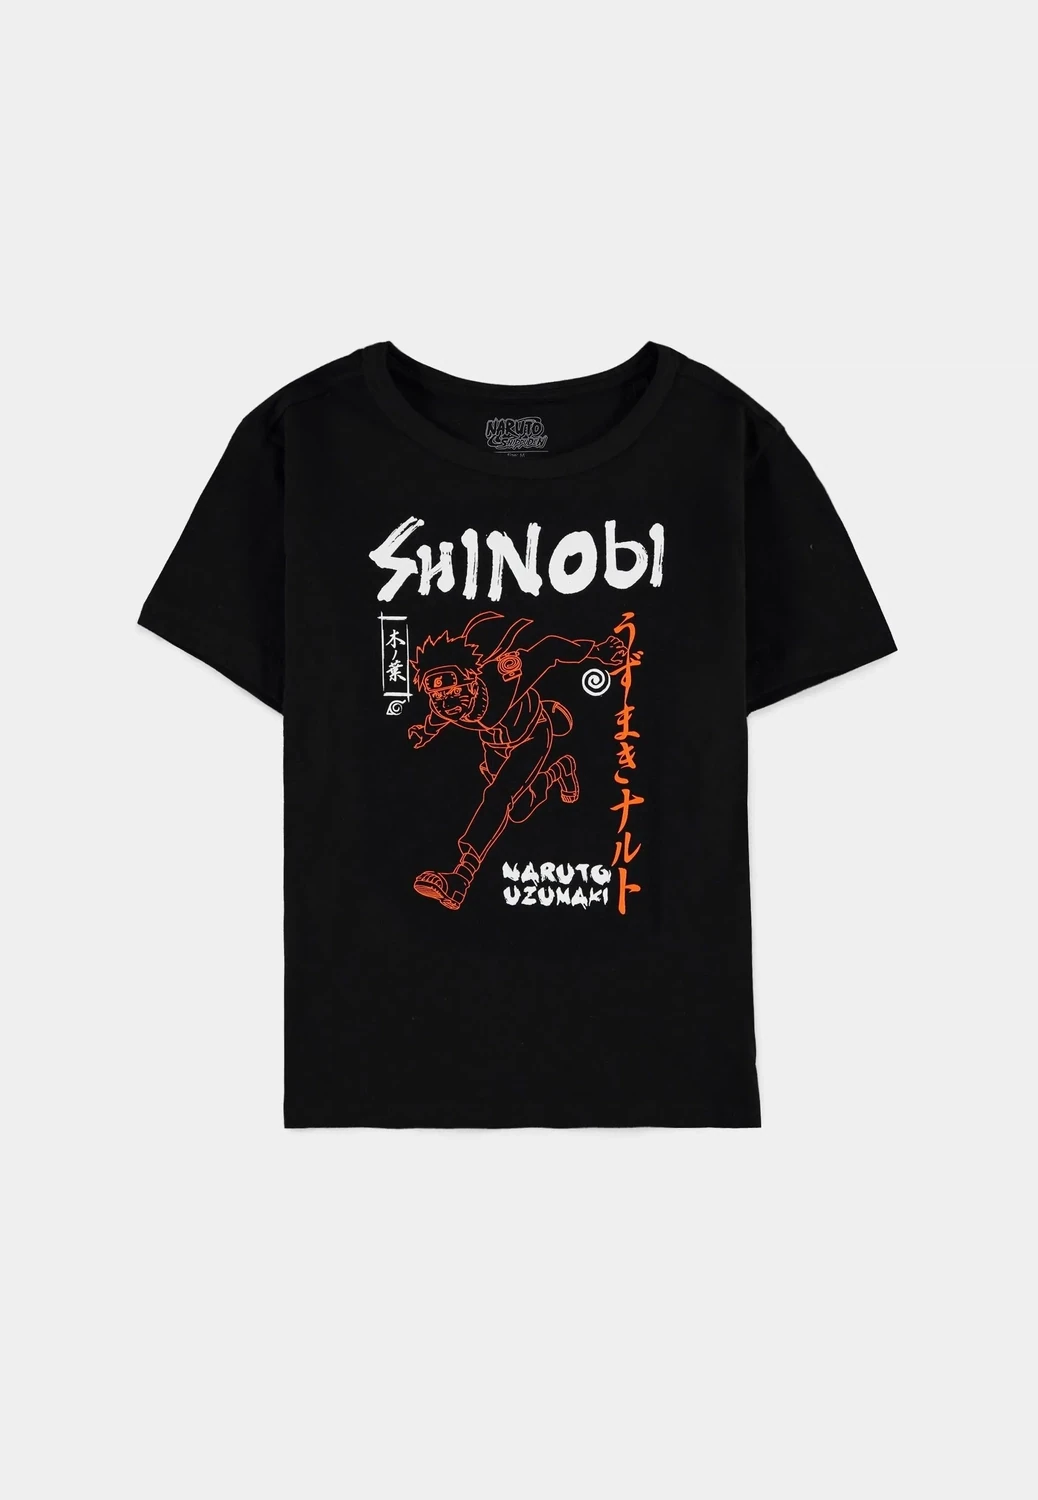 Naruto Shippuden - Naruto Uzumaki Shinobi - Boys Short Sleeved T-shirt